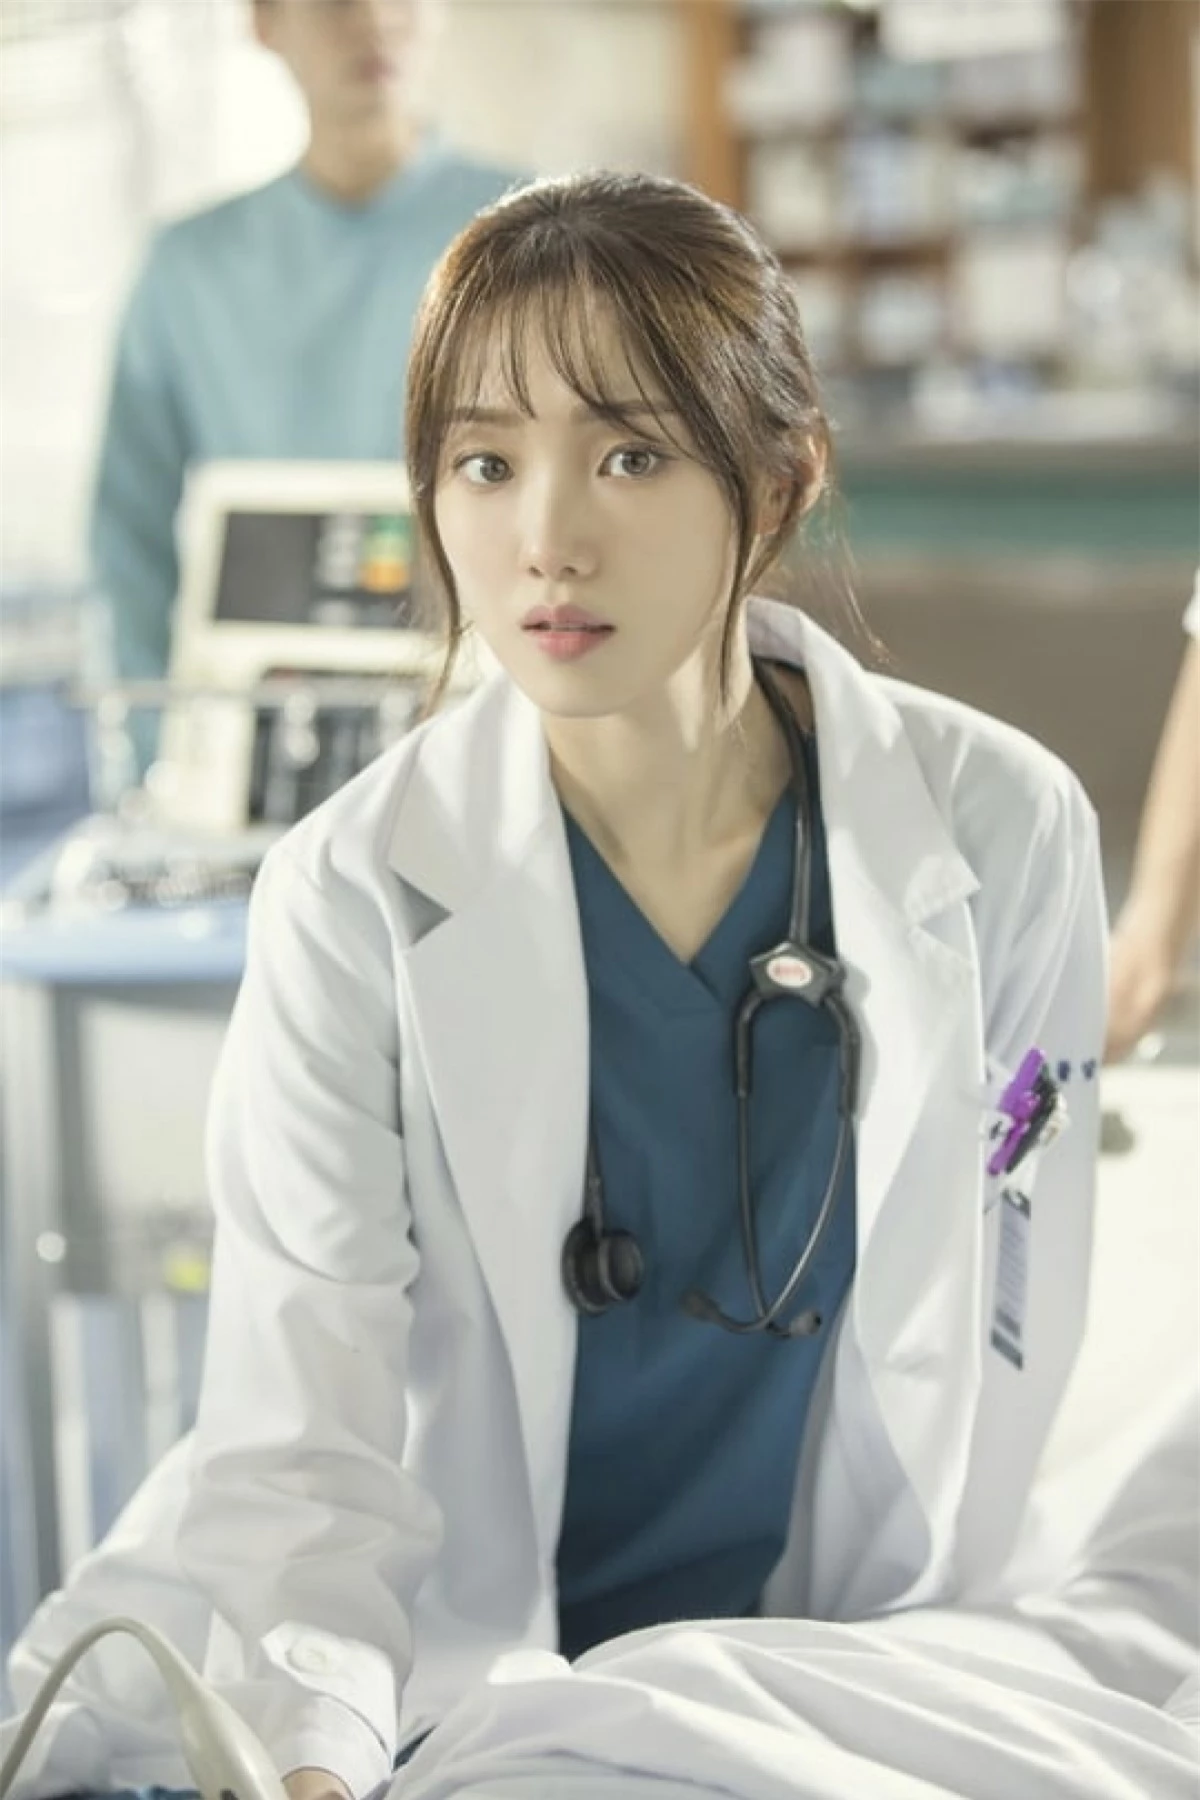 Lee Sung Kyung có vẻ ngoài ưa nhìn và hầu như không có anti-fan. Cô được yêu thích qua rất nhiều vai diễn, minh chứng rõ ràng nhất là vai nữ bác sĩ trong loạt phim “Dr. Romantic 2”. Lee Sung Kyung đã thể hiện thành công hai mặt đối lập của nhân vật: một bác sĩ phẫu thuật tài giỏi và một người phụ nữ phải vật lộn với những cơn hoảng loạn của chính mình.